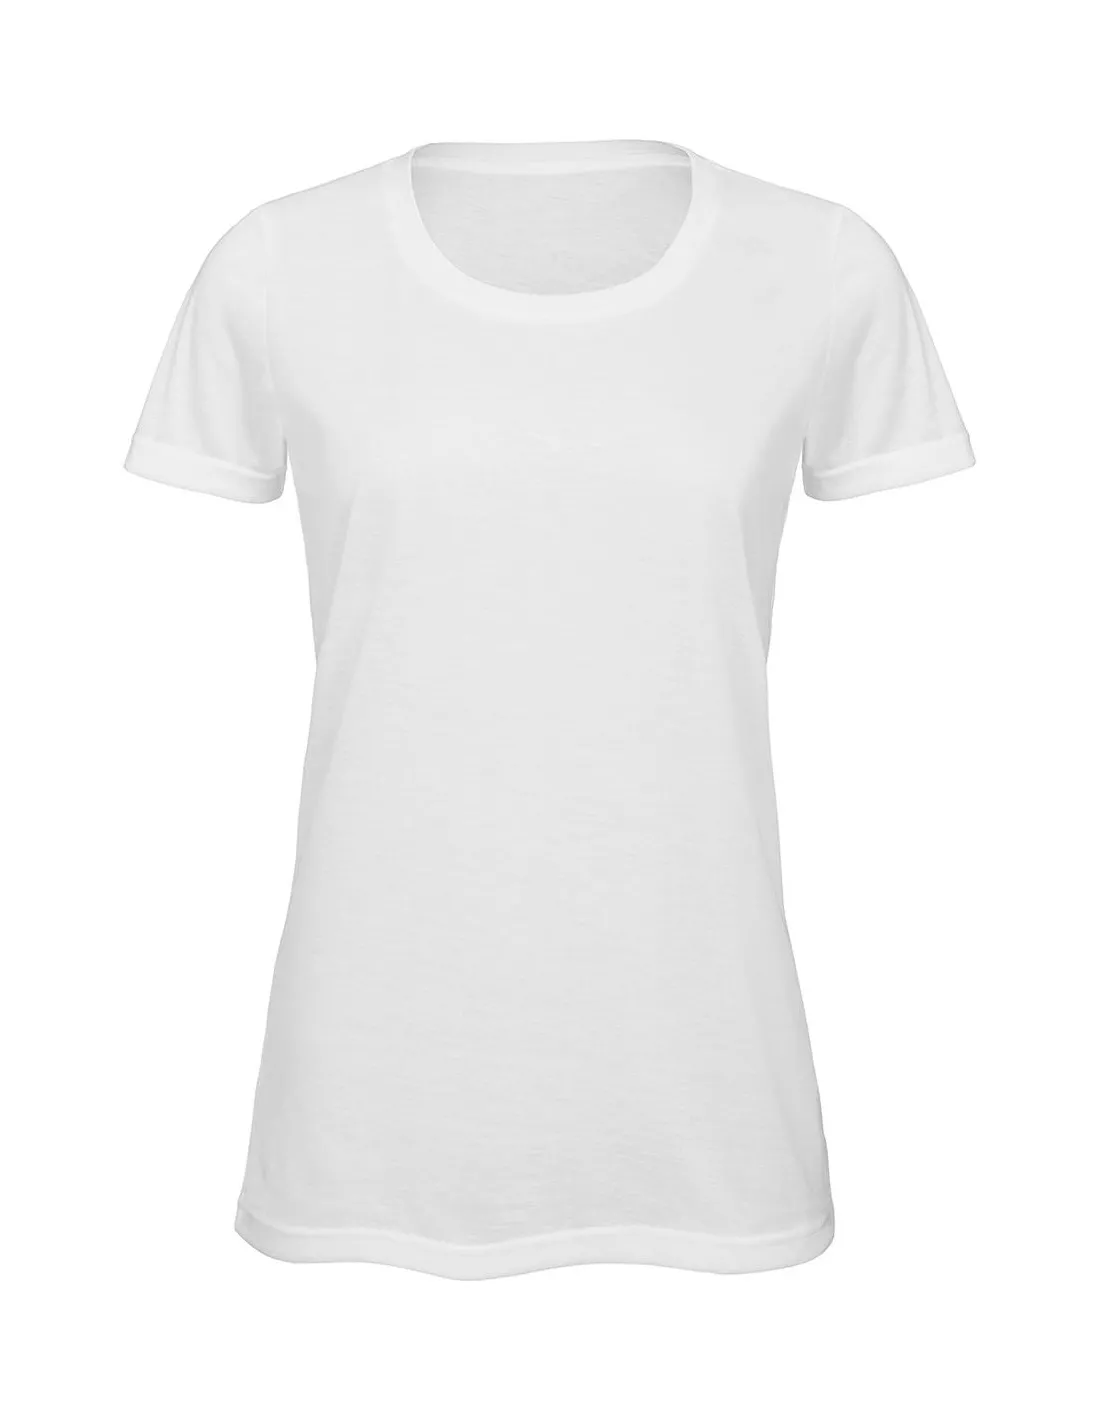 Camiseta sublimación mujer